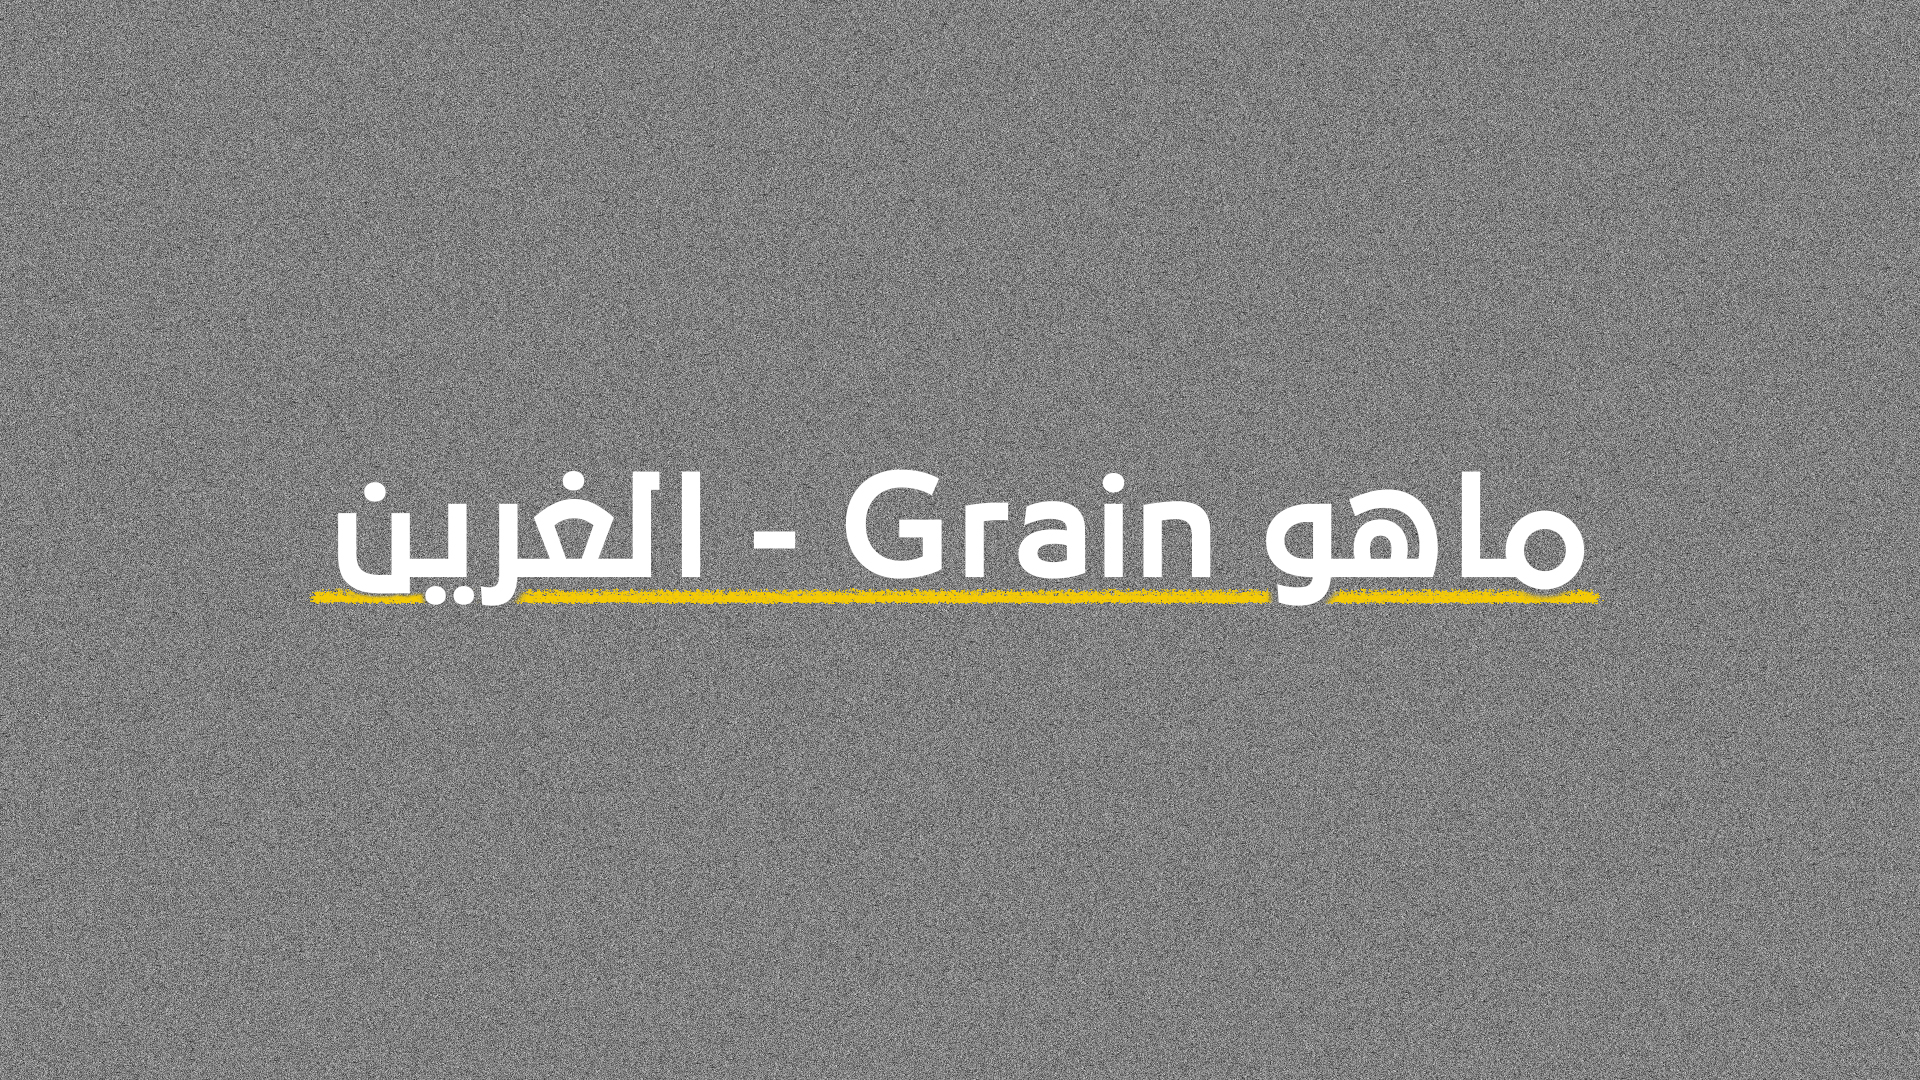 ماهو Grain – الغرين وكيف ولماذا عليك أن تستخدمه في أعمالك القادمة